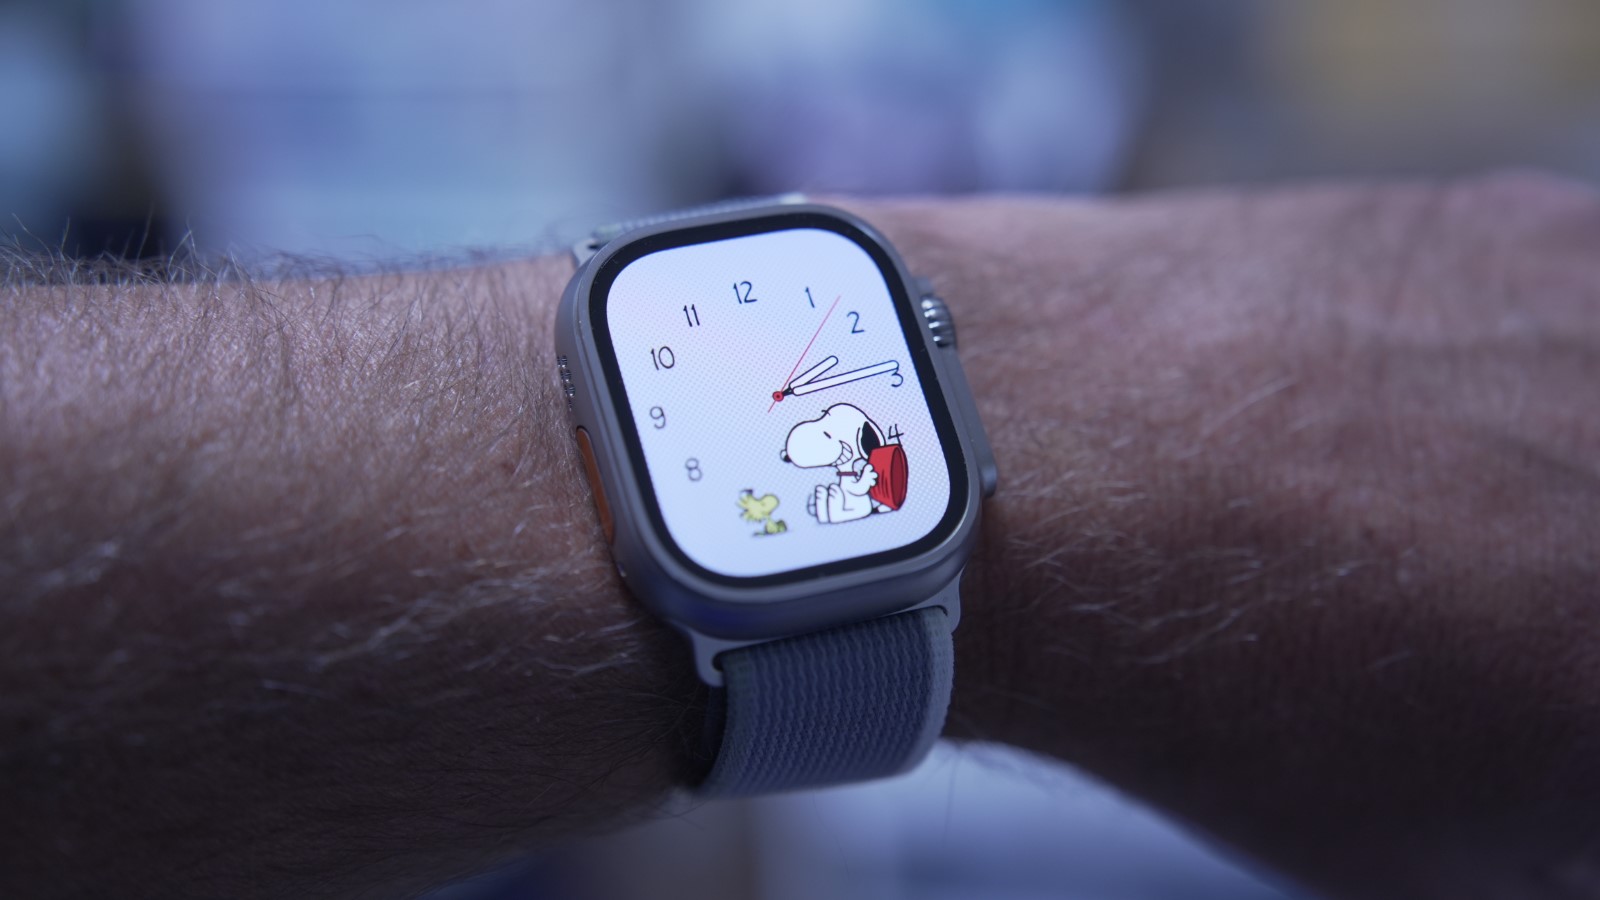 Apple Watch Ultra 2 testi: Bilekte bir hafta geçirdikten sonra saatte büyük avantajlar - Dünyadan Güncel Teknoloji Haberleri